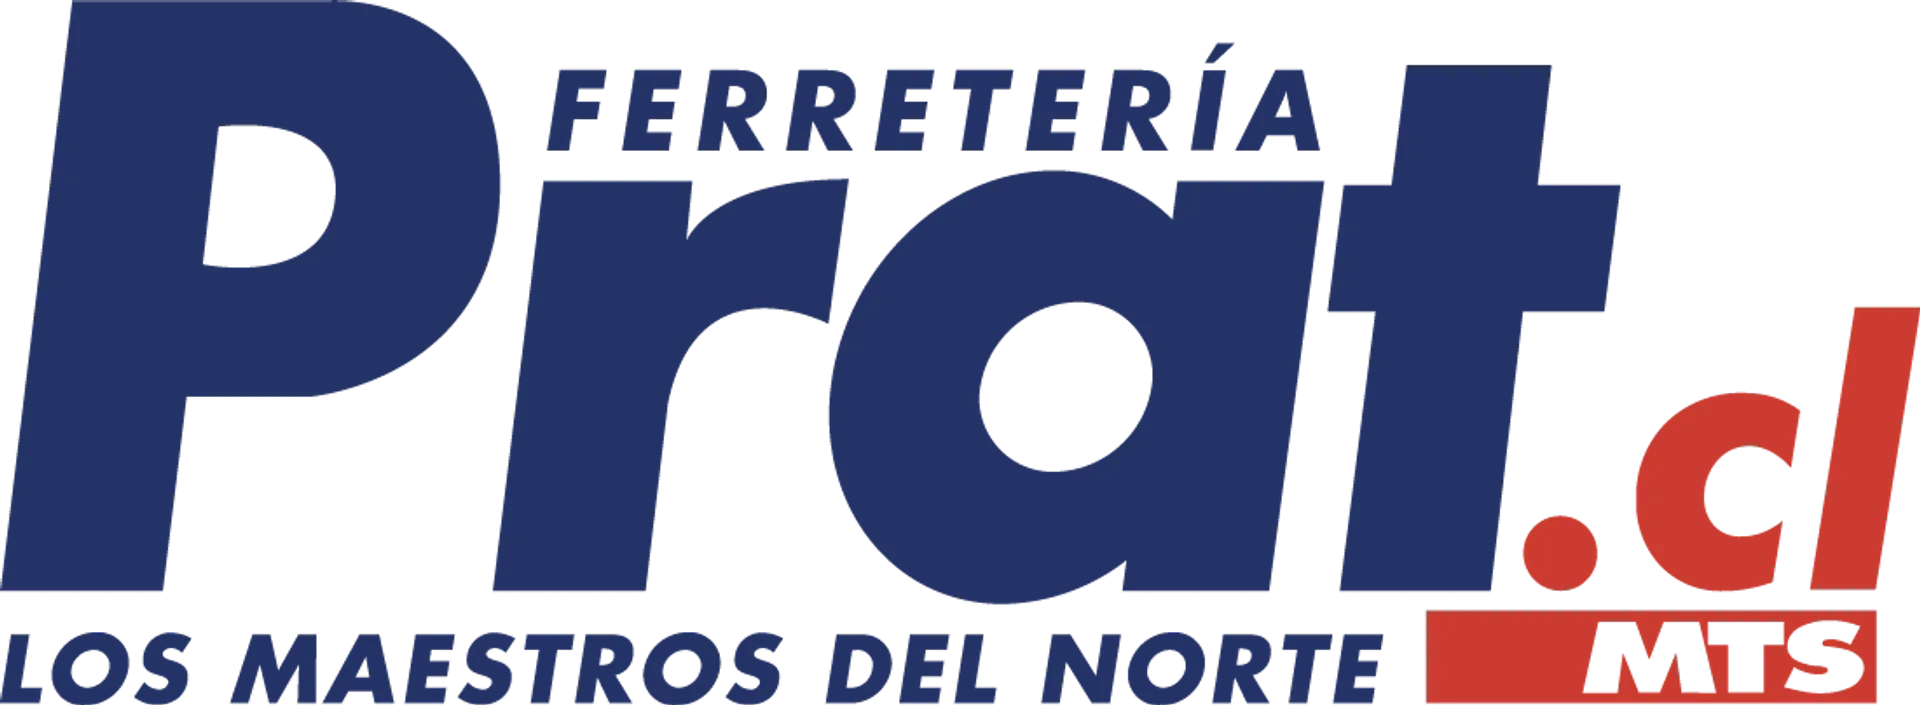 FERRETERIA PRAT logo